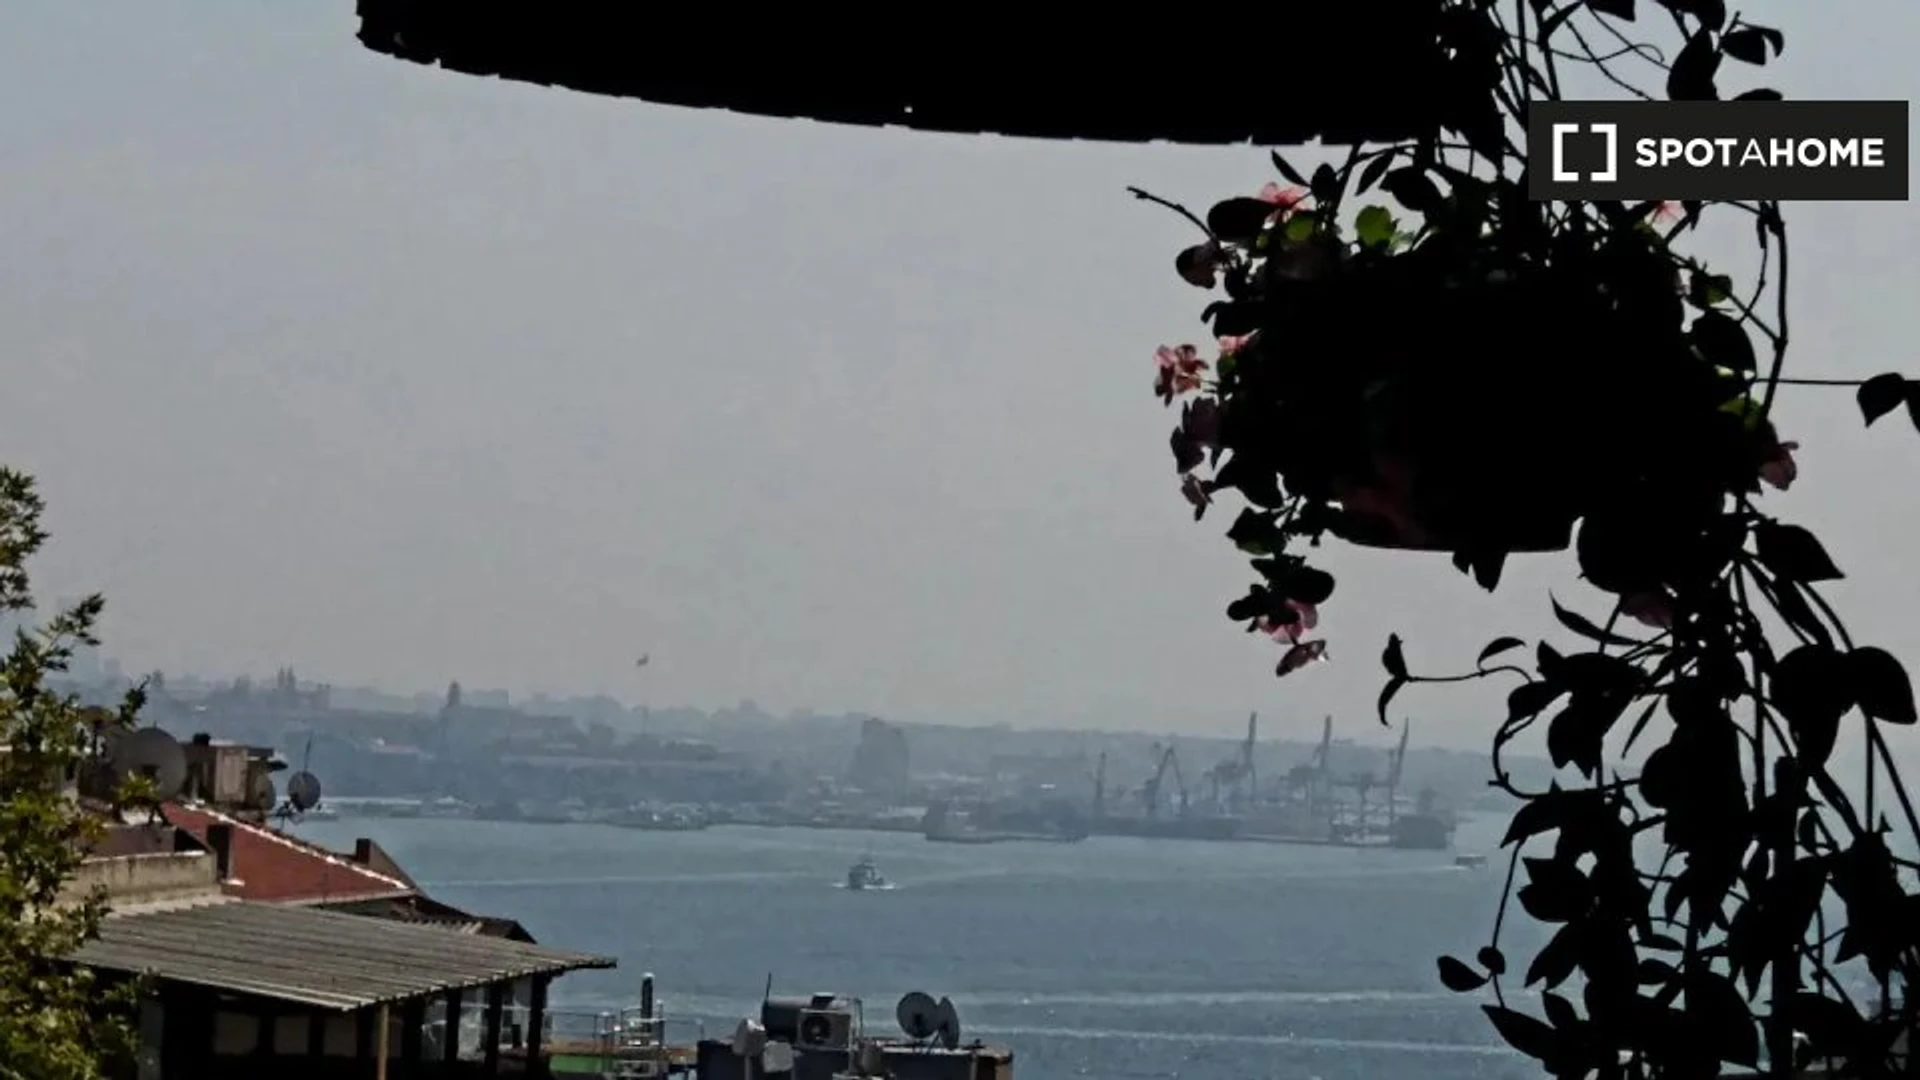 Chambre à louer dans un appartement en colocation à Istanbul